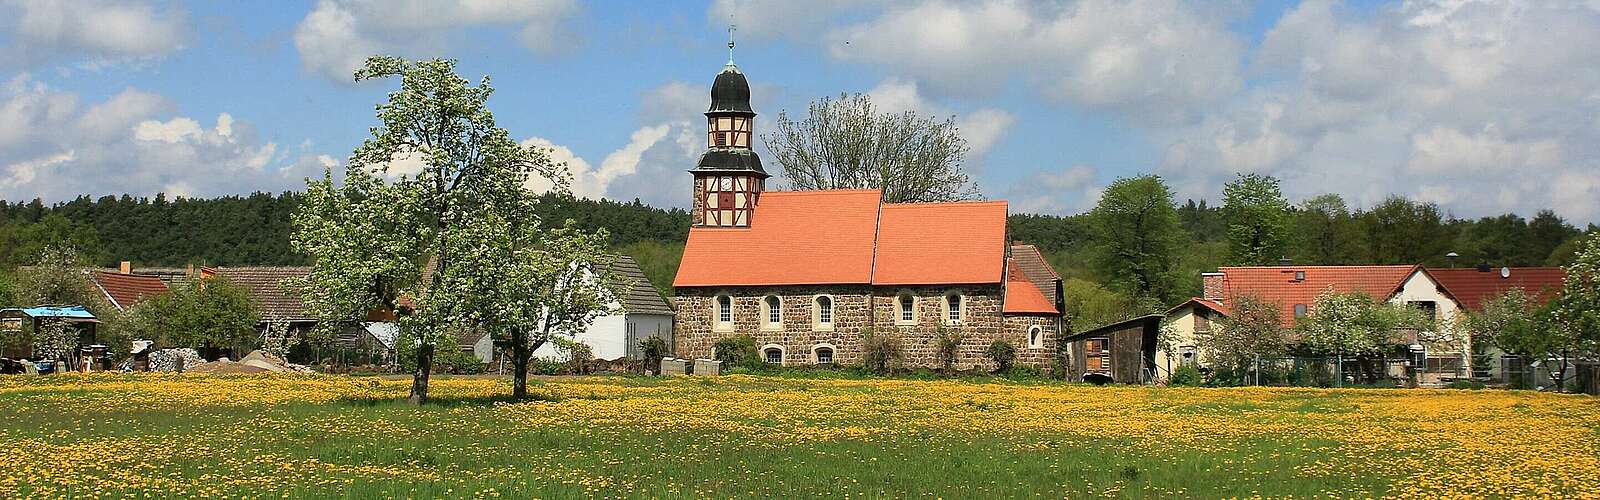 Blick auf die Dorfkirche Raben,
        
    

        
        
            Foto: Kein Urheber bekannt